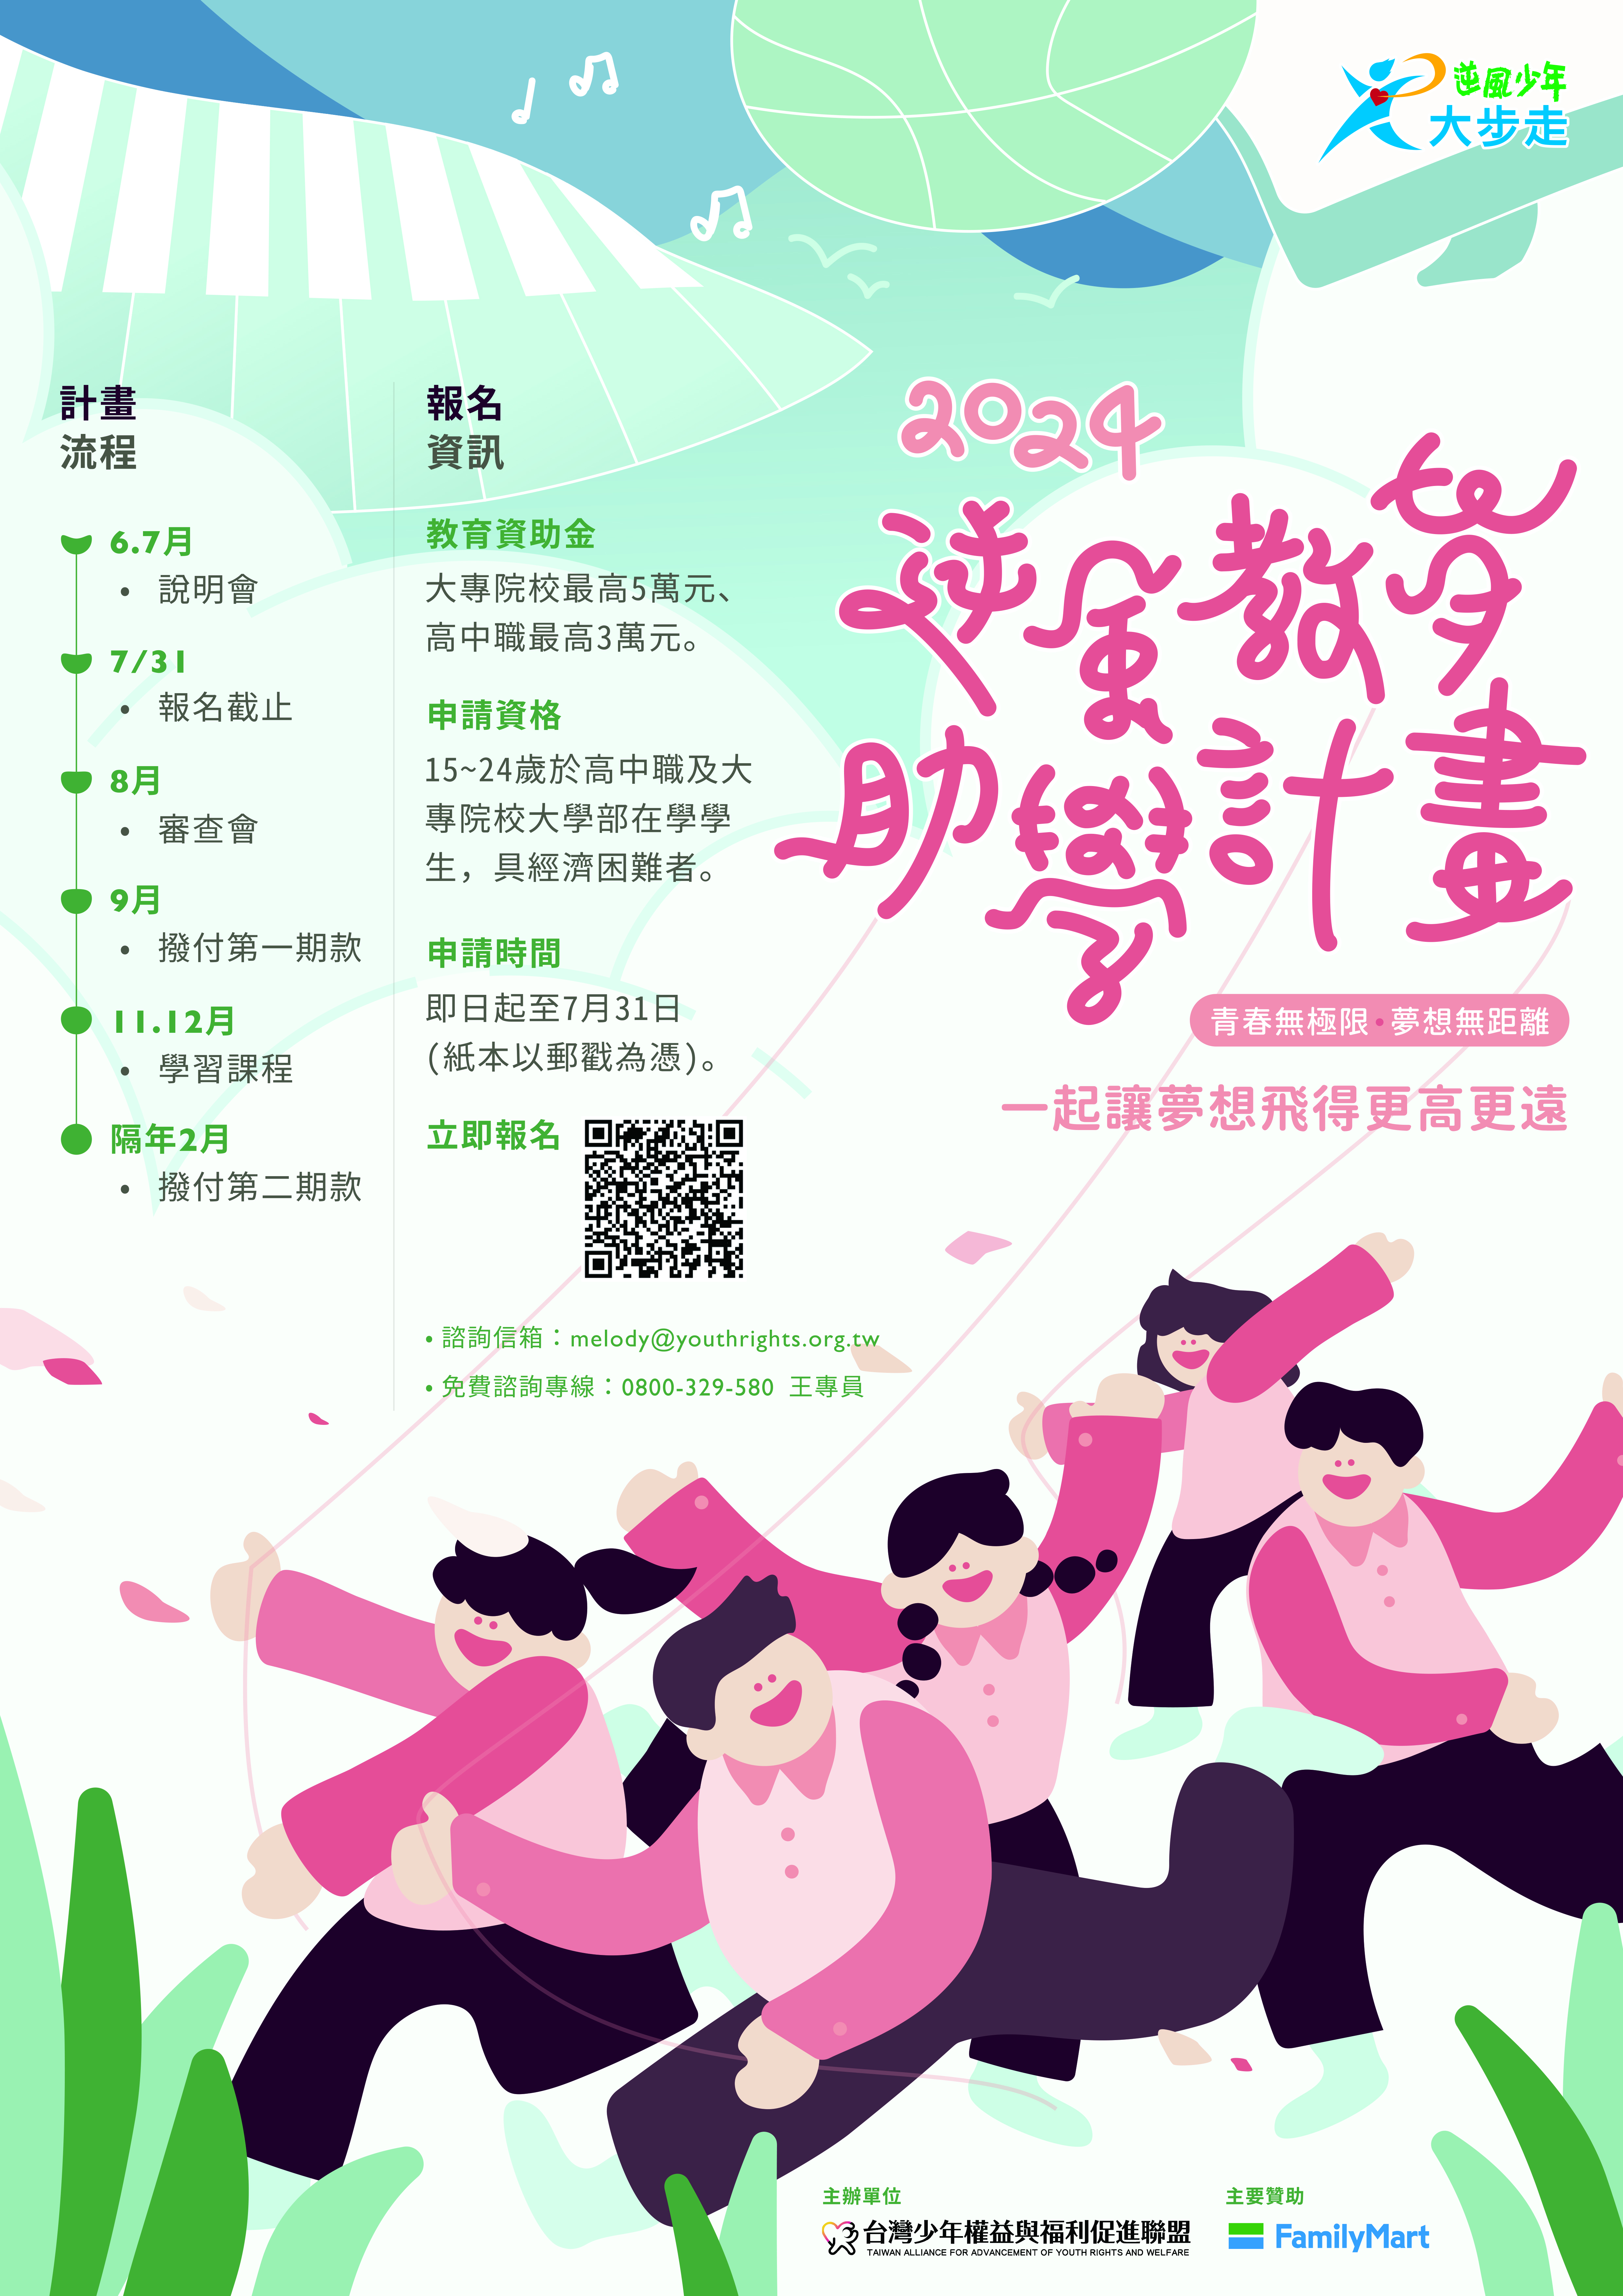 社團法人台灣少年權益與福利促進聯盟辦理「113學年度逆風教育助學計劃」招生海報電子檔、報名簡章